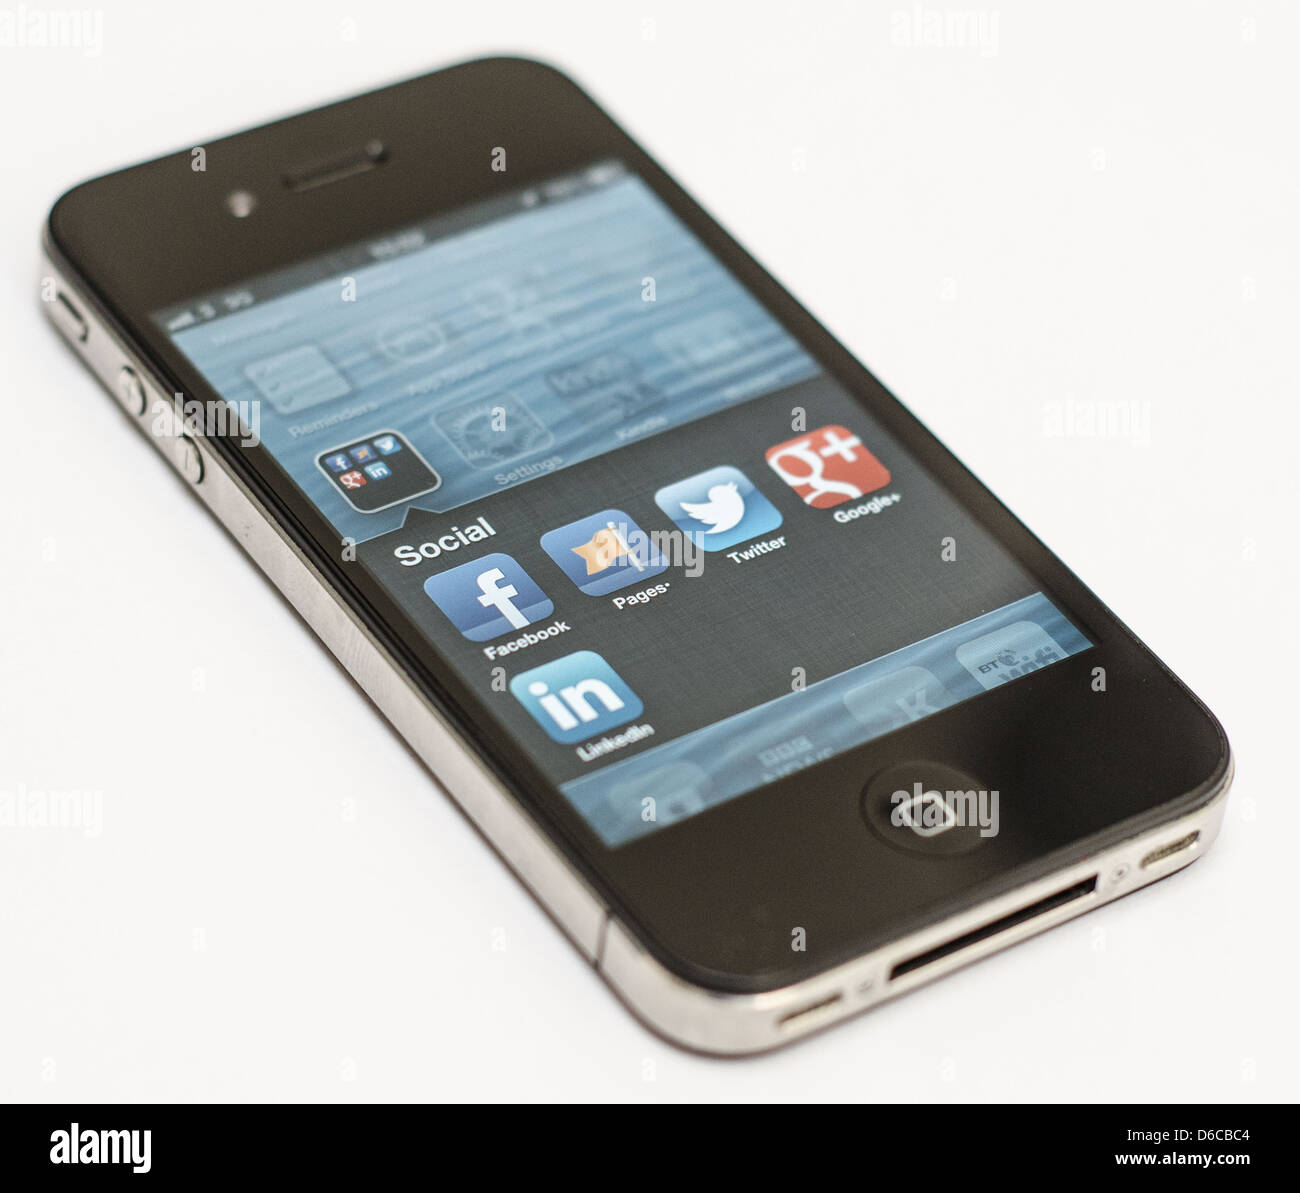 Apple iPhone su sfondo bianco che mostra una selezione di applicazioni di social media - Facebook, Twitter, Google+, LinkedIn. Foto Stock